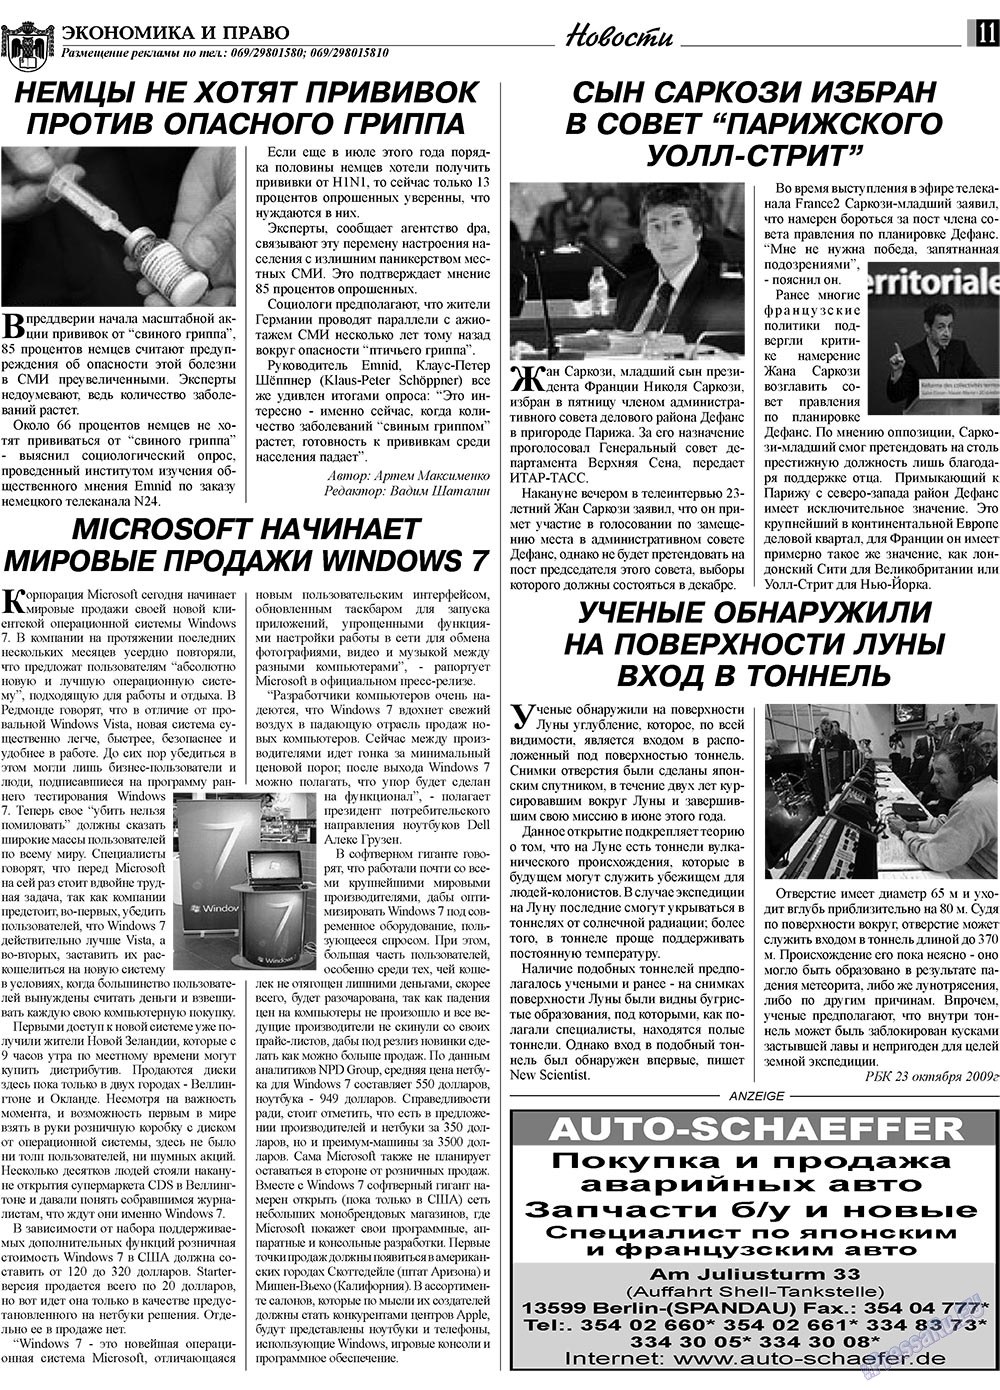 Экономика и право, газета. 2009 №11 стр.11